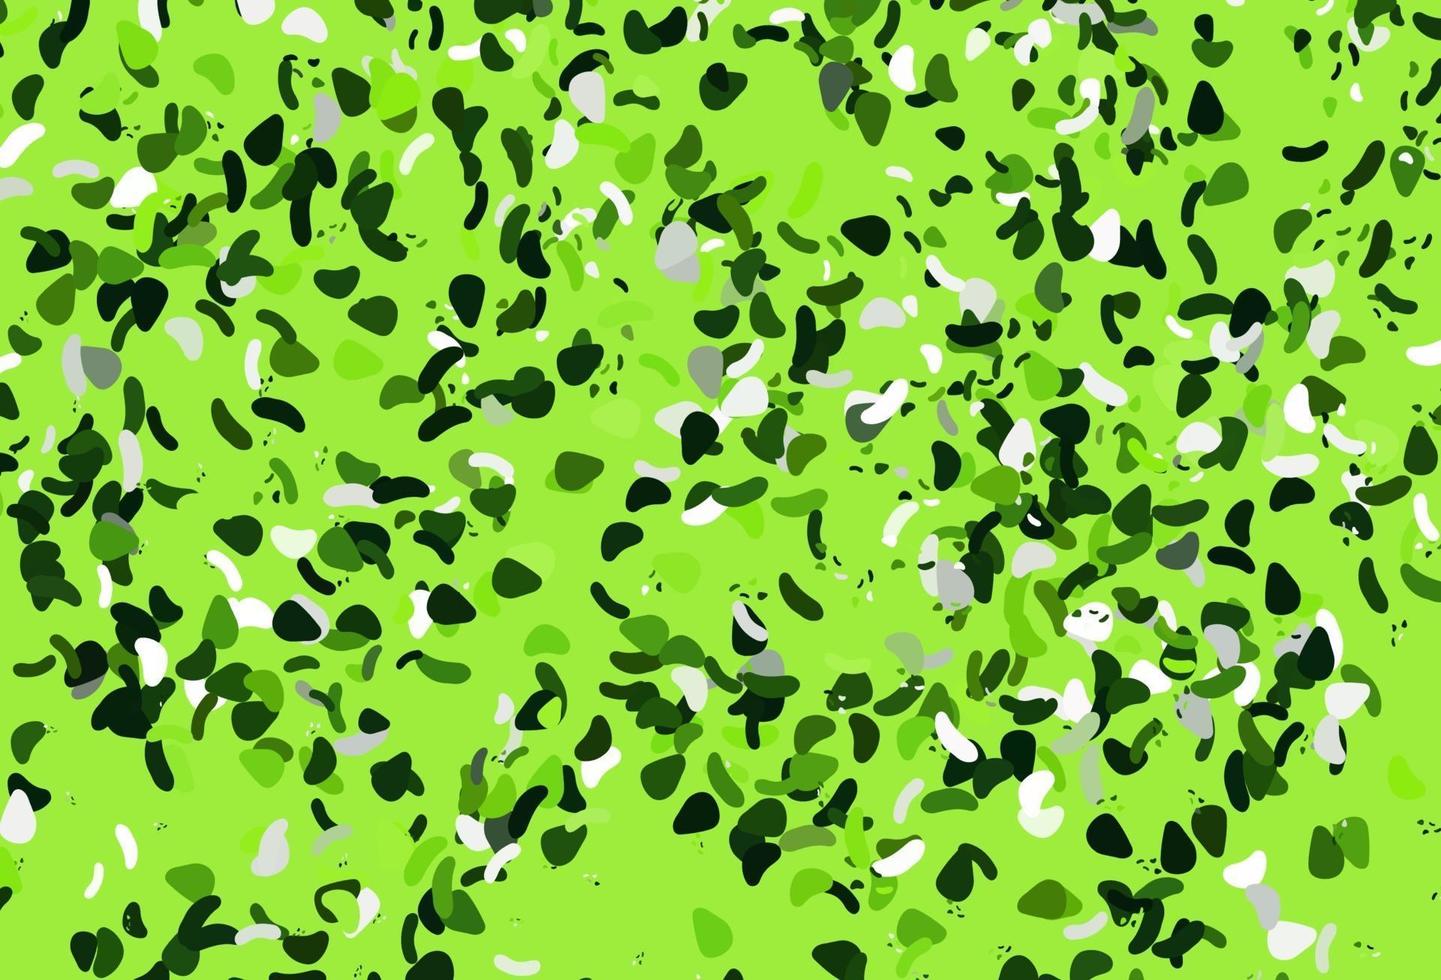 modelo de vetor verde claro com formas de memphis.